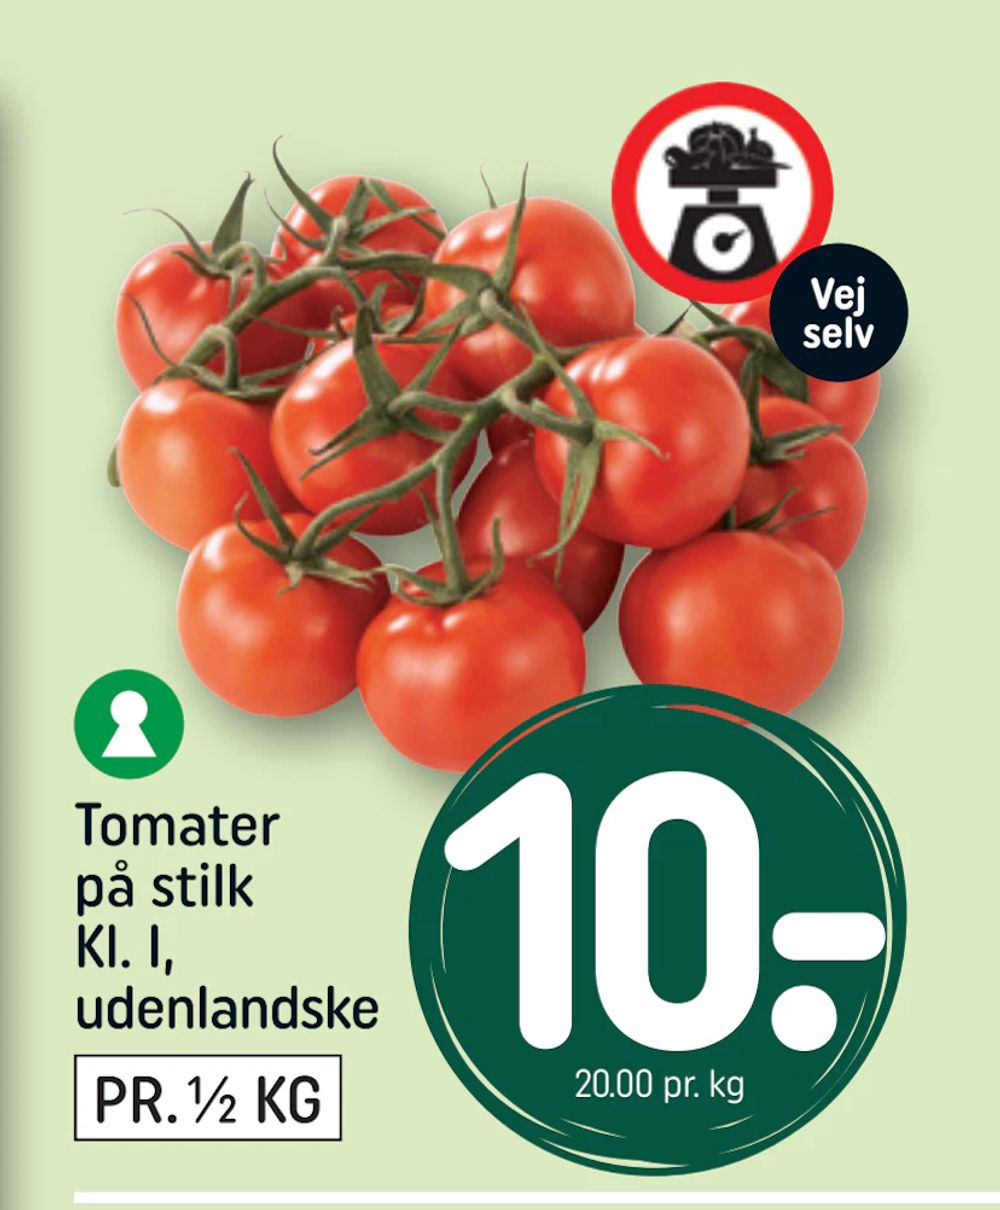 Tilbud på Tomater på stilk Kl. I, udenlandske fra REMA 1000 til 10 kr.